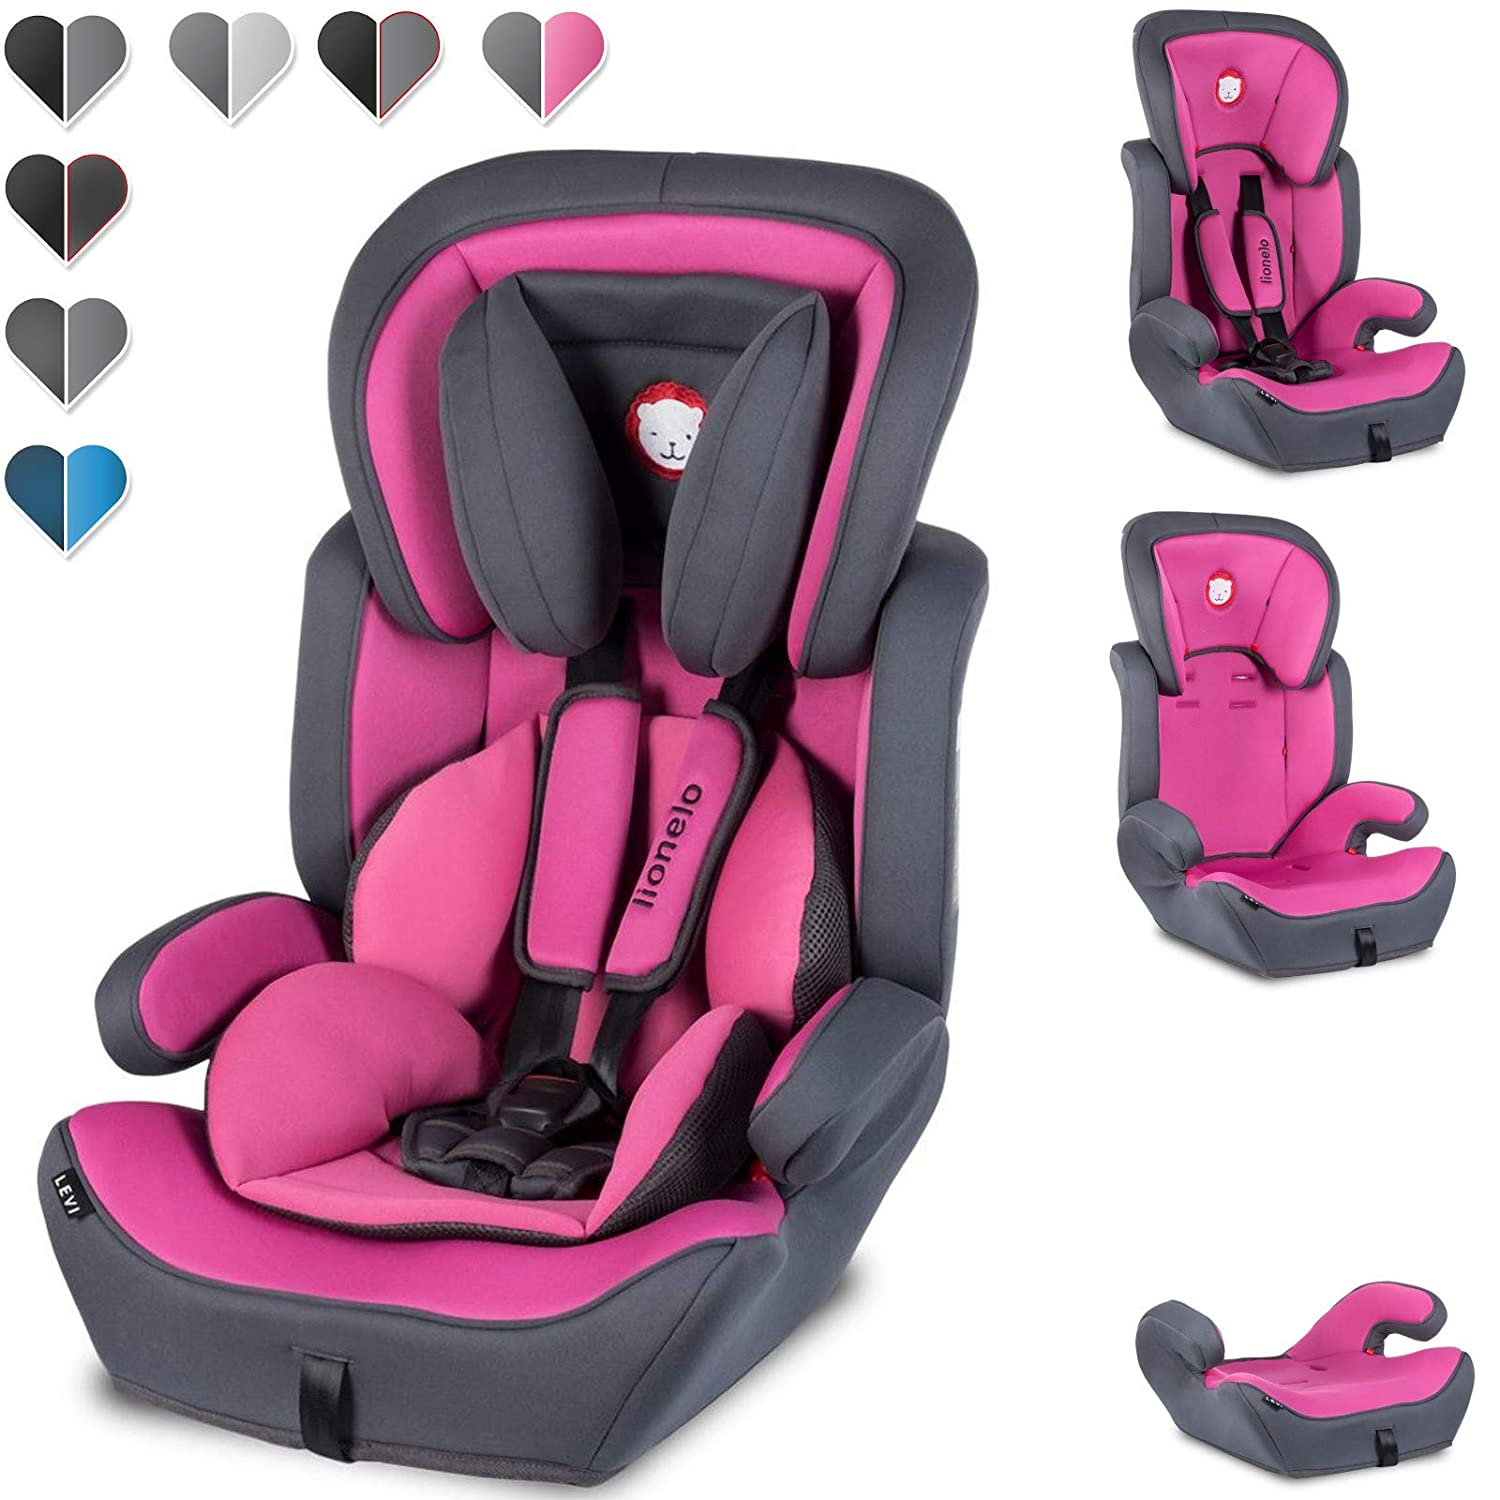 Lionelo Levi Plus Child Seat 9-36 kg, Child Car Seat Group 1 2 3, Adjustable Headrest, ECE R44.04 (Pink)